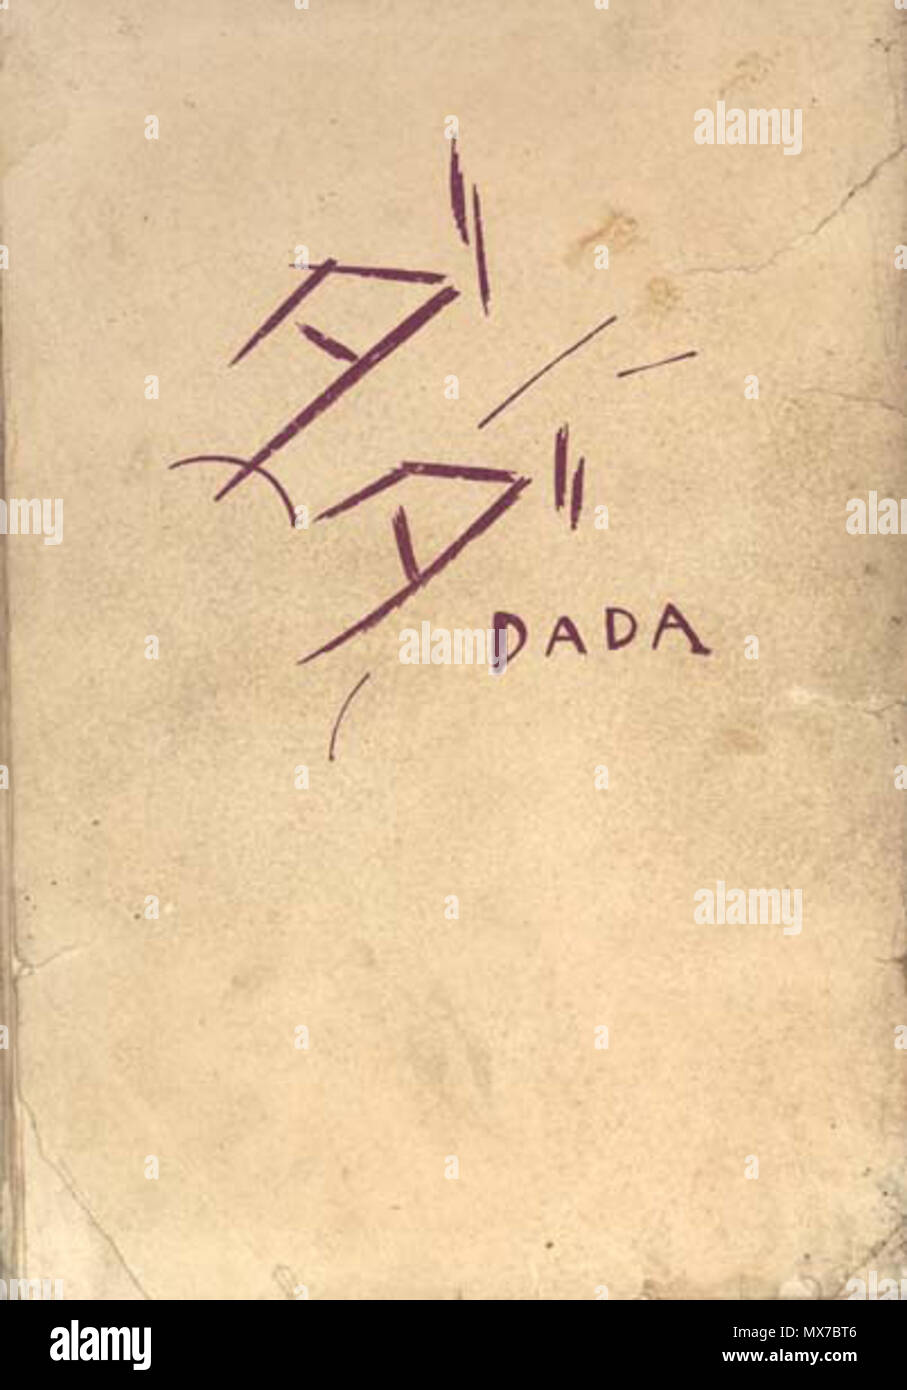 . Deutsch: DADA - Shinkichi Takahashi (1924) . 1924. 高橋新吉 (Takahashi Shinkichi, 1901-1987) 151 Dada - Takahashi Shinkichi Foto Stock